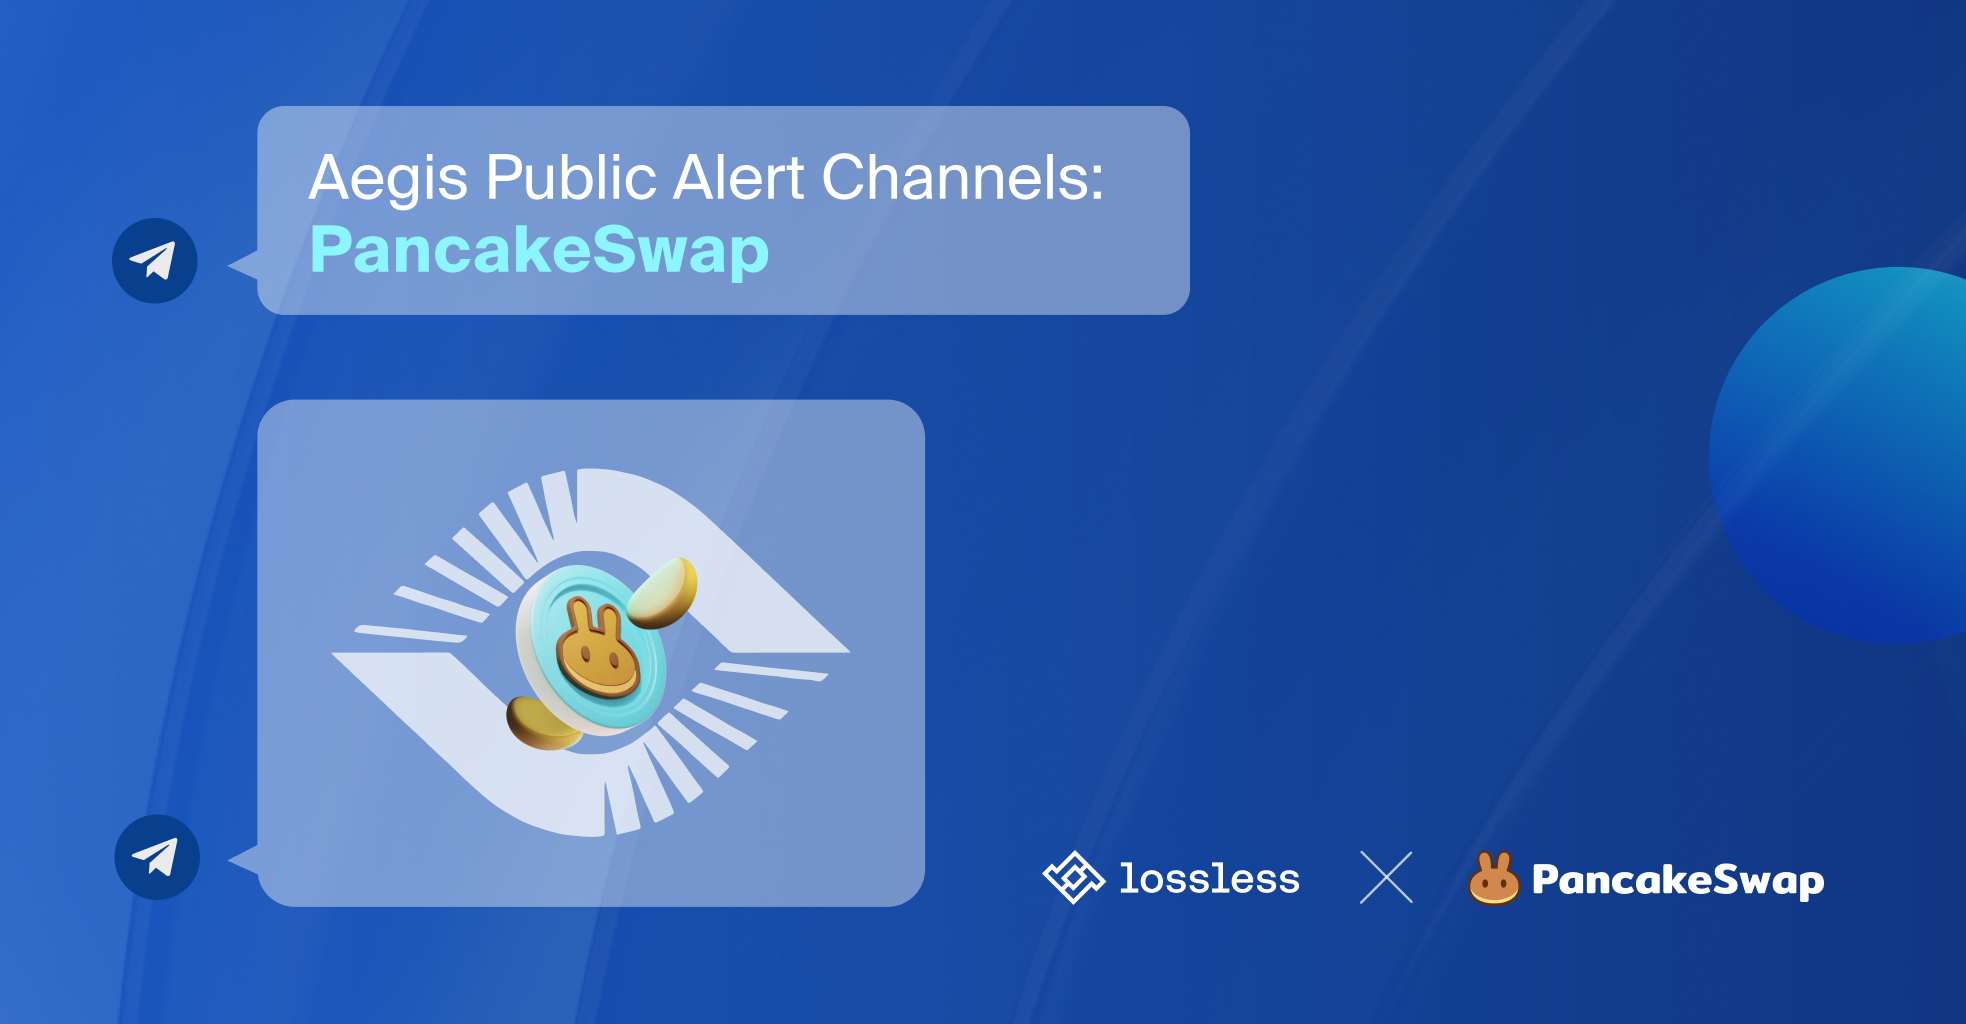 Aegis Public Alert Channels: PancakeSwap